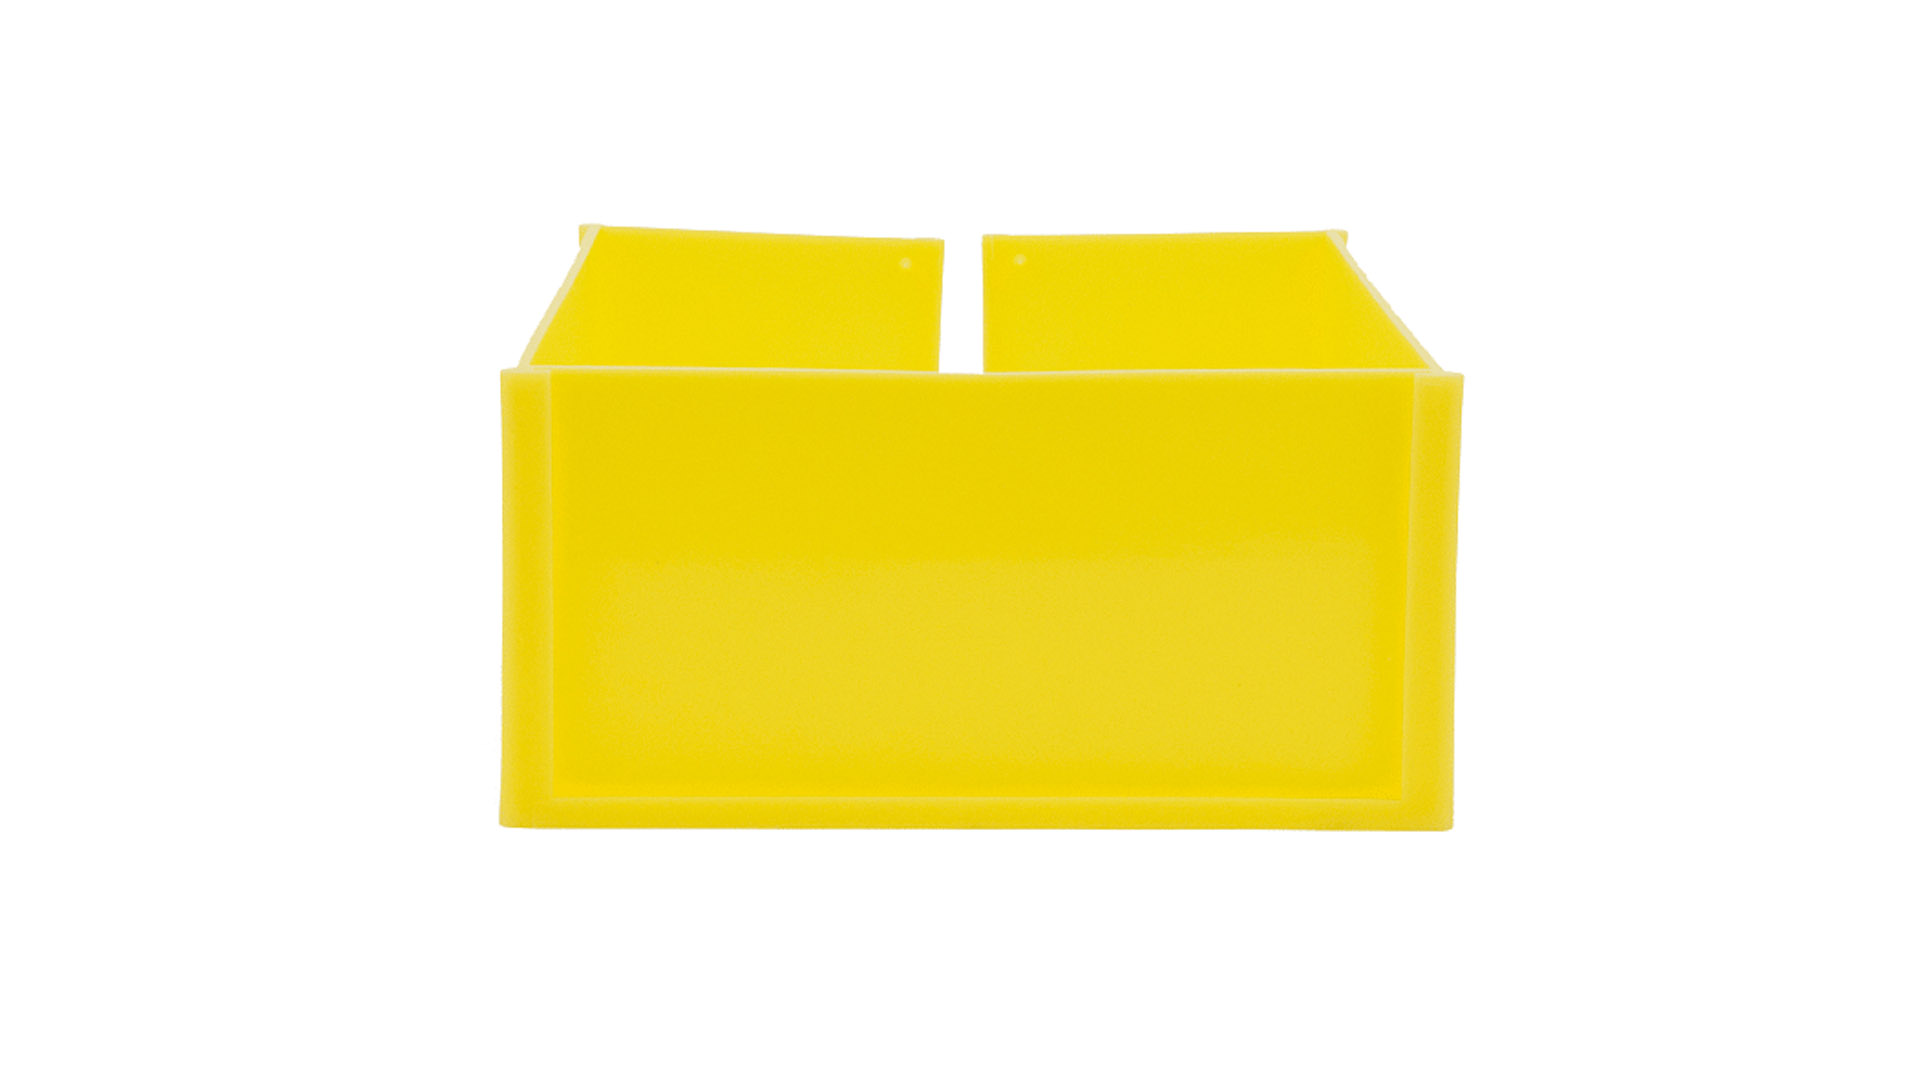 Paletten-ID-Spange, gelb, für den Eckfuß der Palettenschmalseite, BxTxH 113x156x73 mm, VE 25 Stück